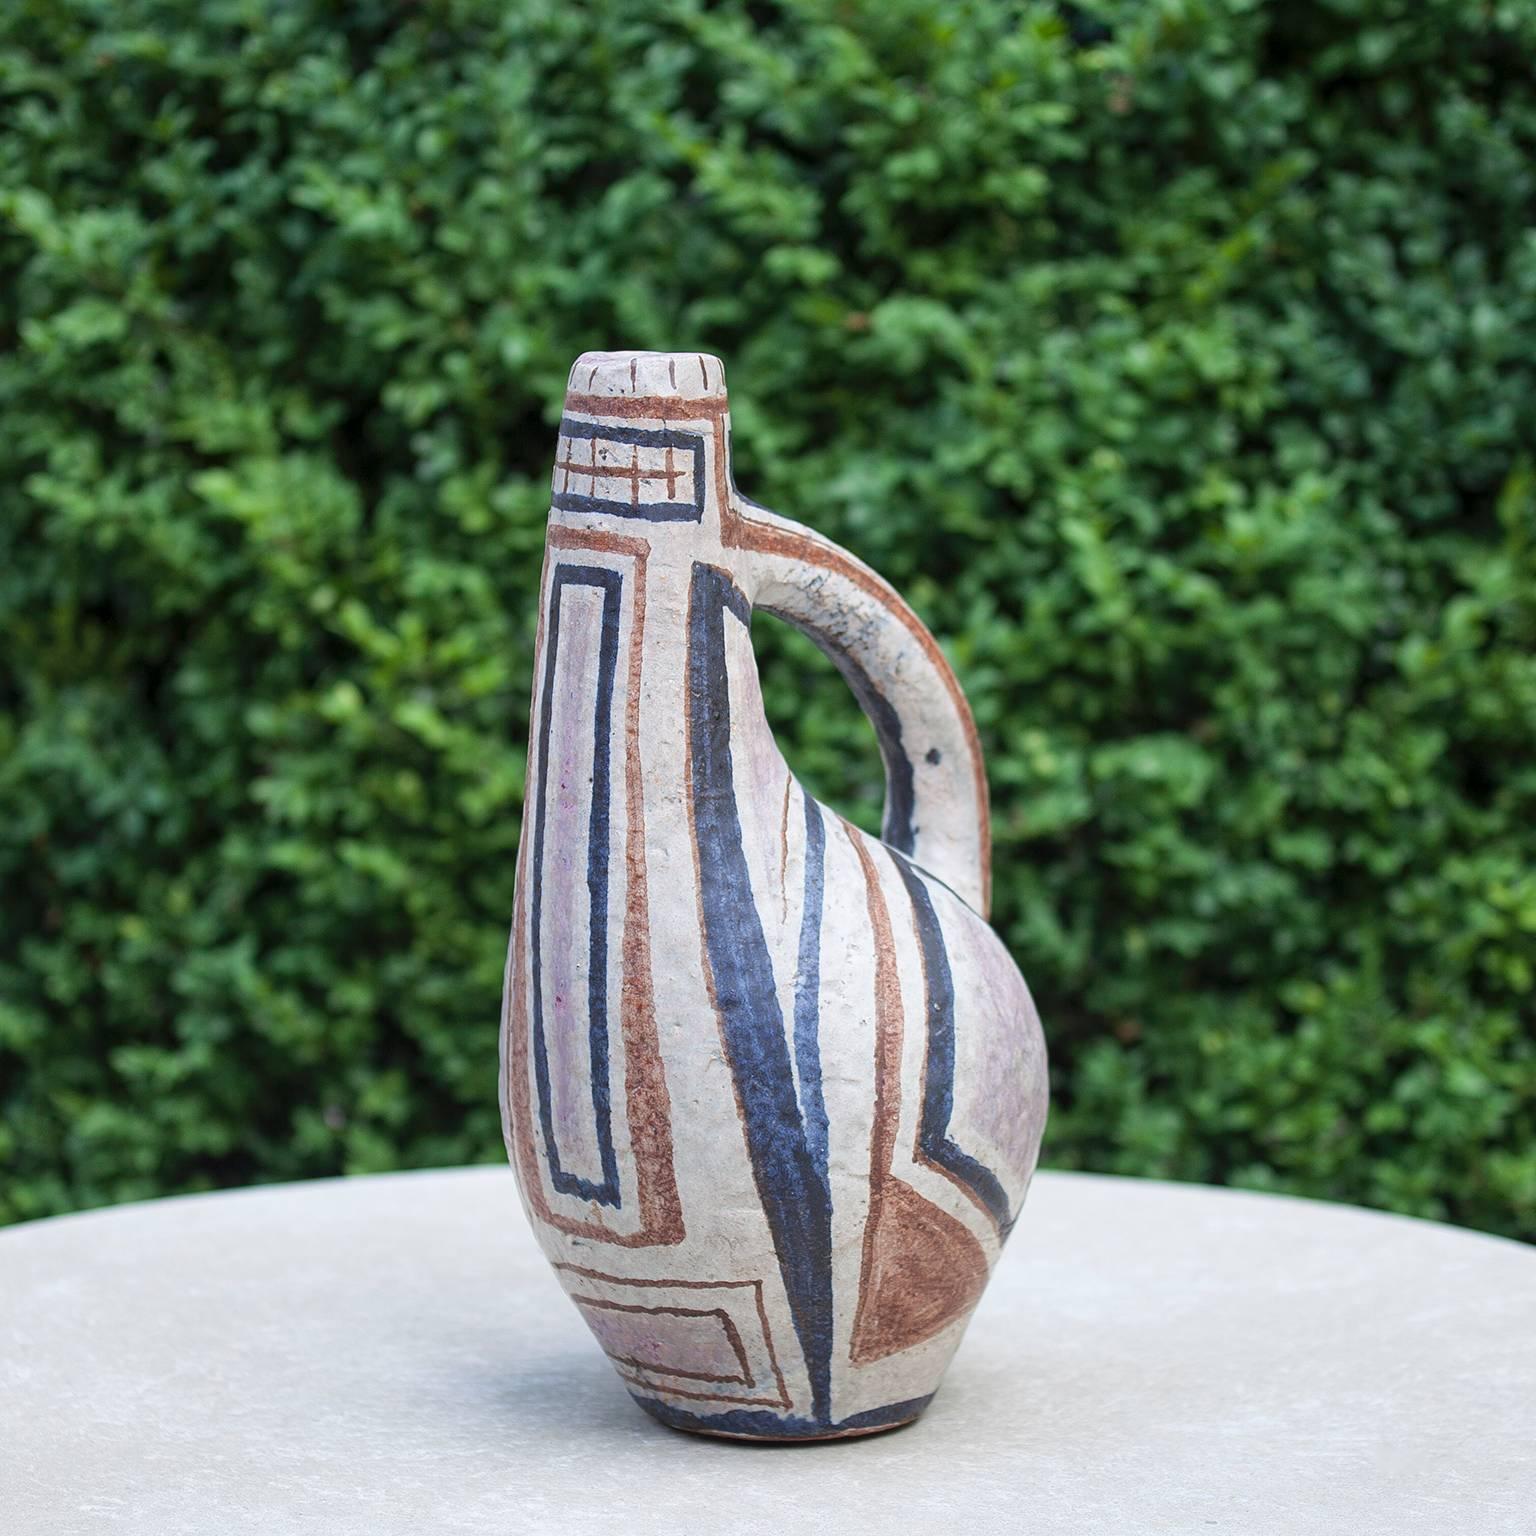 Glazed German Art Pottery Ceramic Pitcher by Roman Elsold, 1958